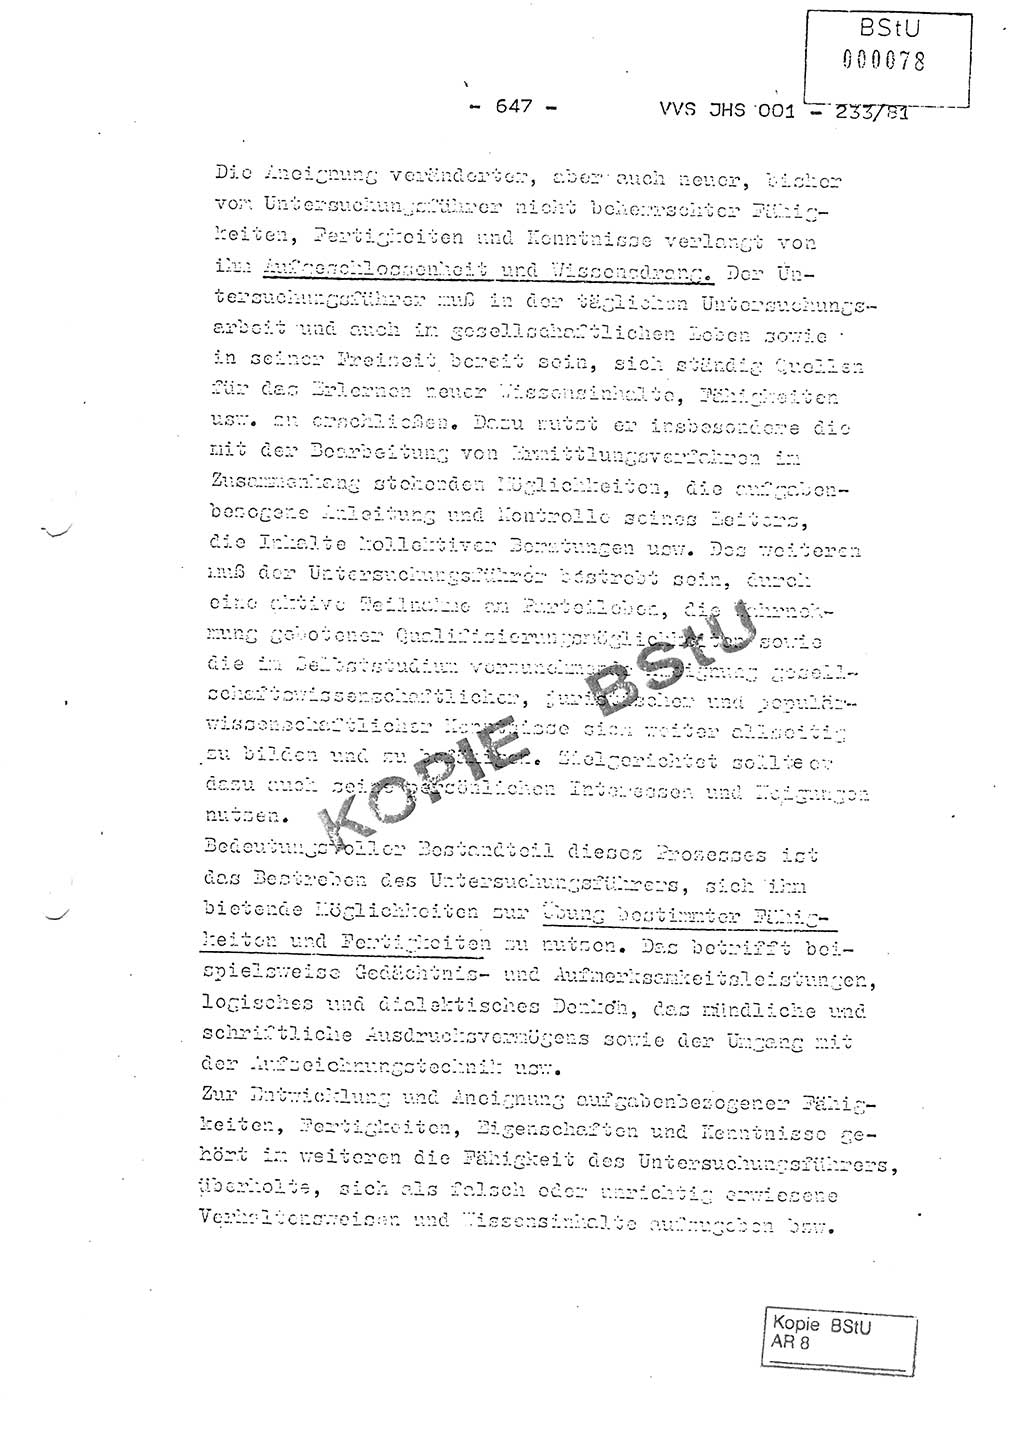 Dissertation Oberstleutnant Horst Zank (JHS), Oberstleutnant Dr. Karl-Heinz Knoblauch (JHS), Oberstleutnant Gustav-Adolf Kowalewski (HA Ⅸ), Oberstleutnant Wolfgang Plötner (HA Ⅸ), Ministerium für Staatssicherheit (MfS) [Deutsche Demokratische Republik (DDR)], Juristische Hochschule (JHS), Vertrauliche Verschlußsache (VVS) o001-233/81, Potsdam 1981, Blatt 647 (Diss. MfS DDR JHS VVS o001-233/81 1981, Bl. 647)